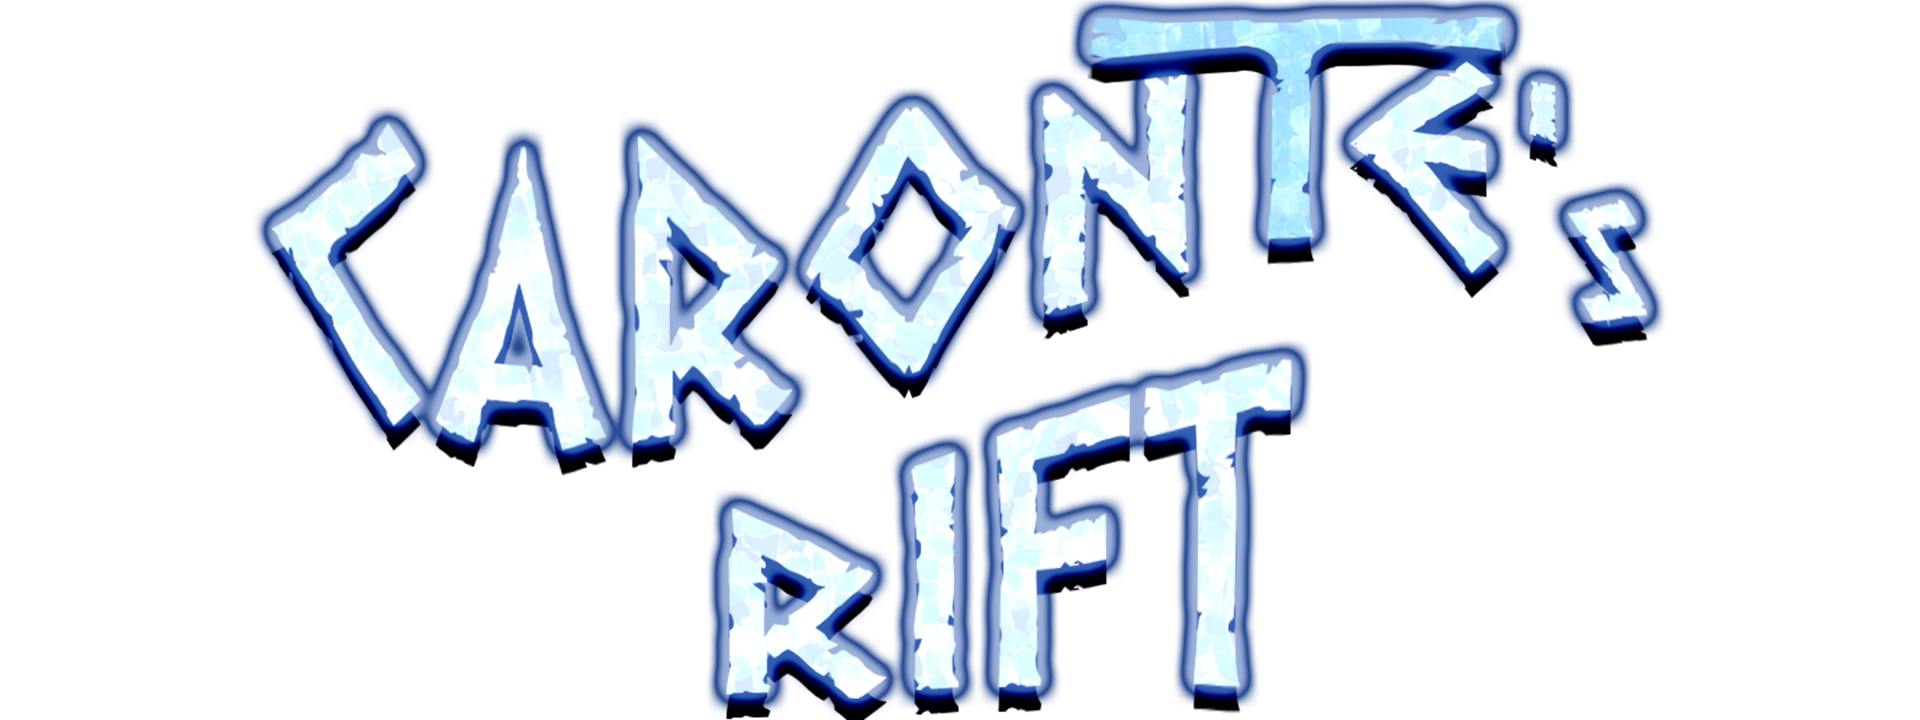 Caronte's Rift